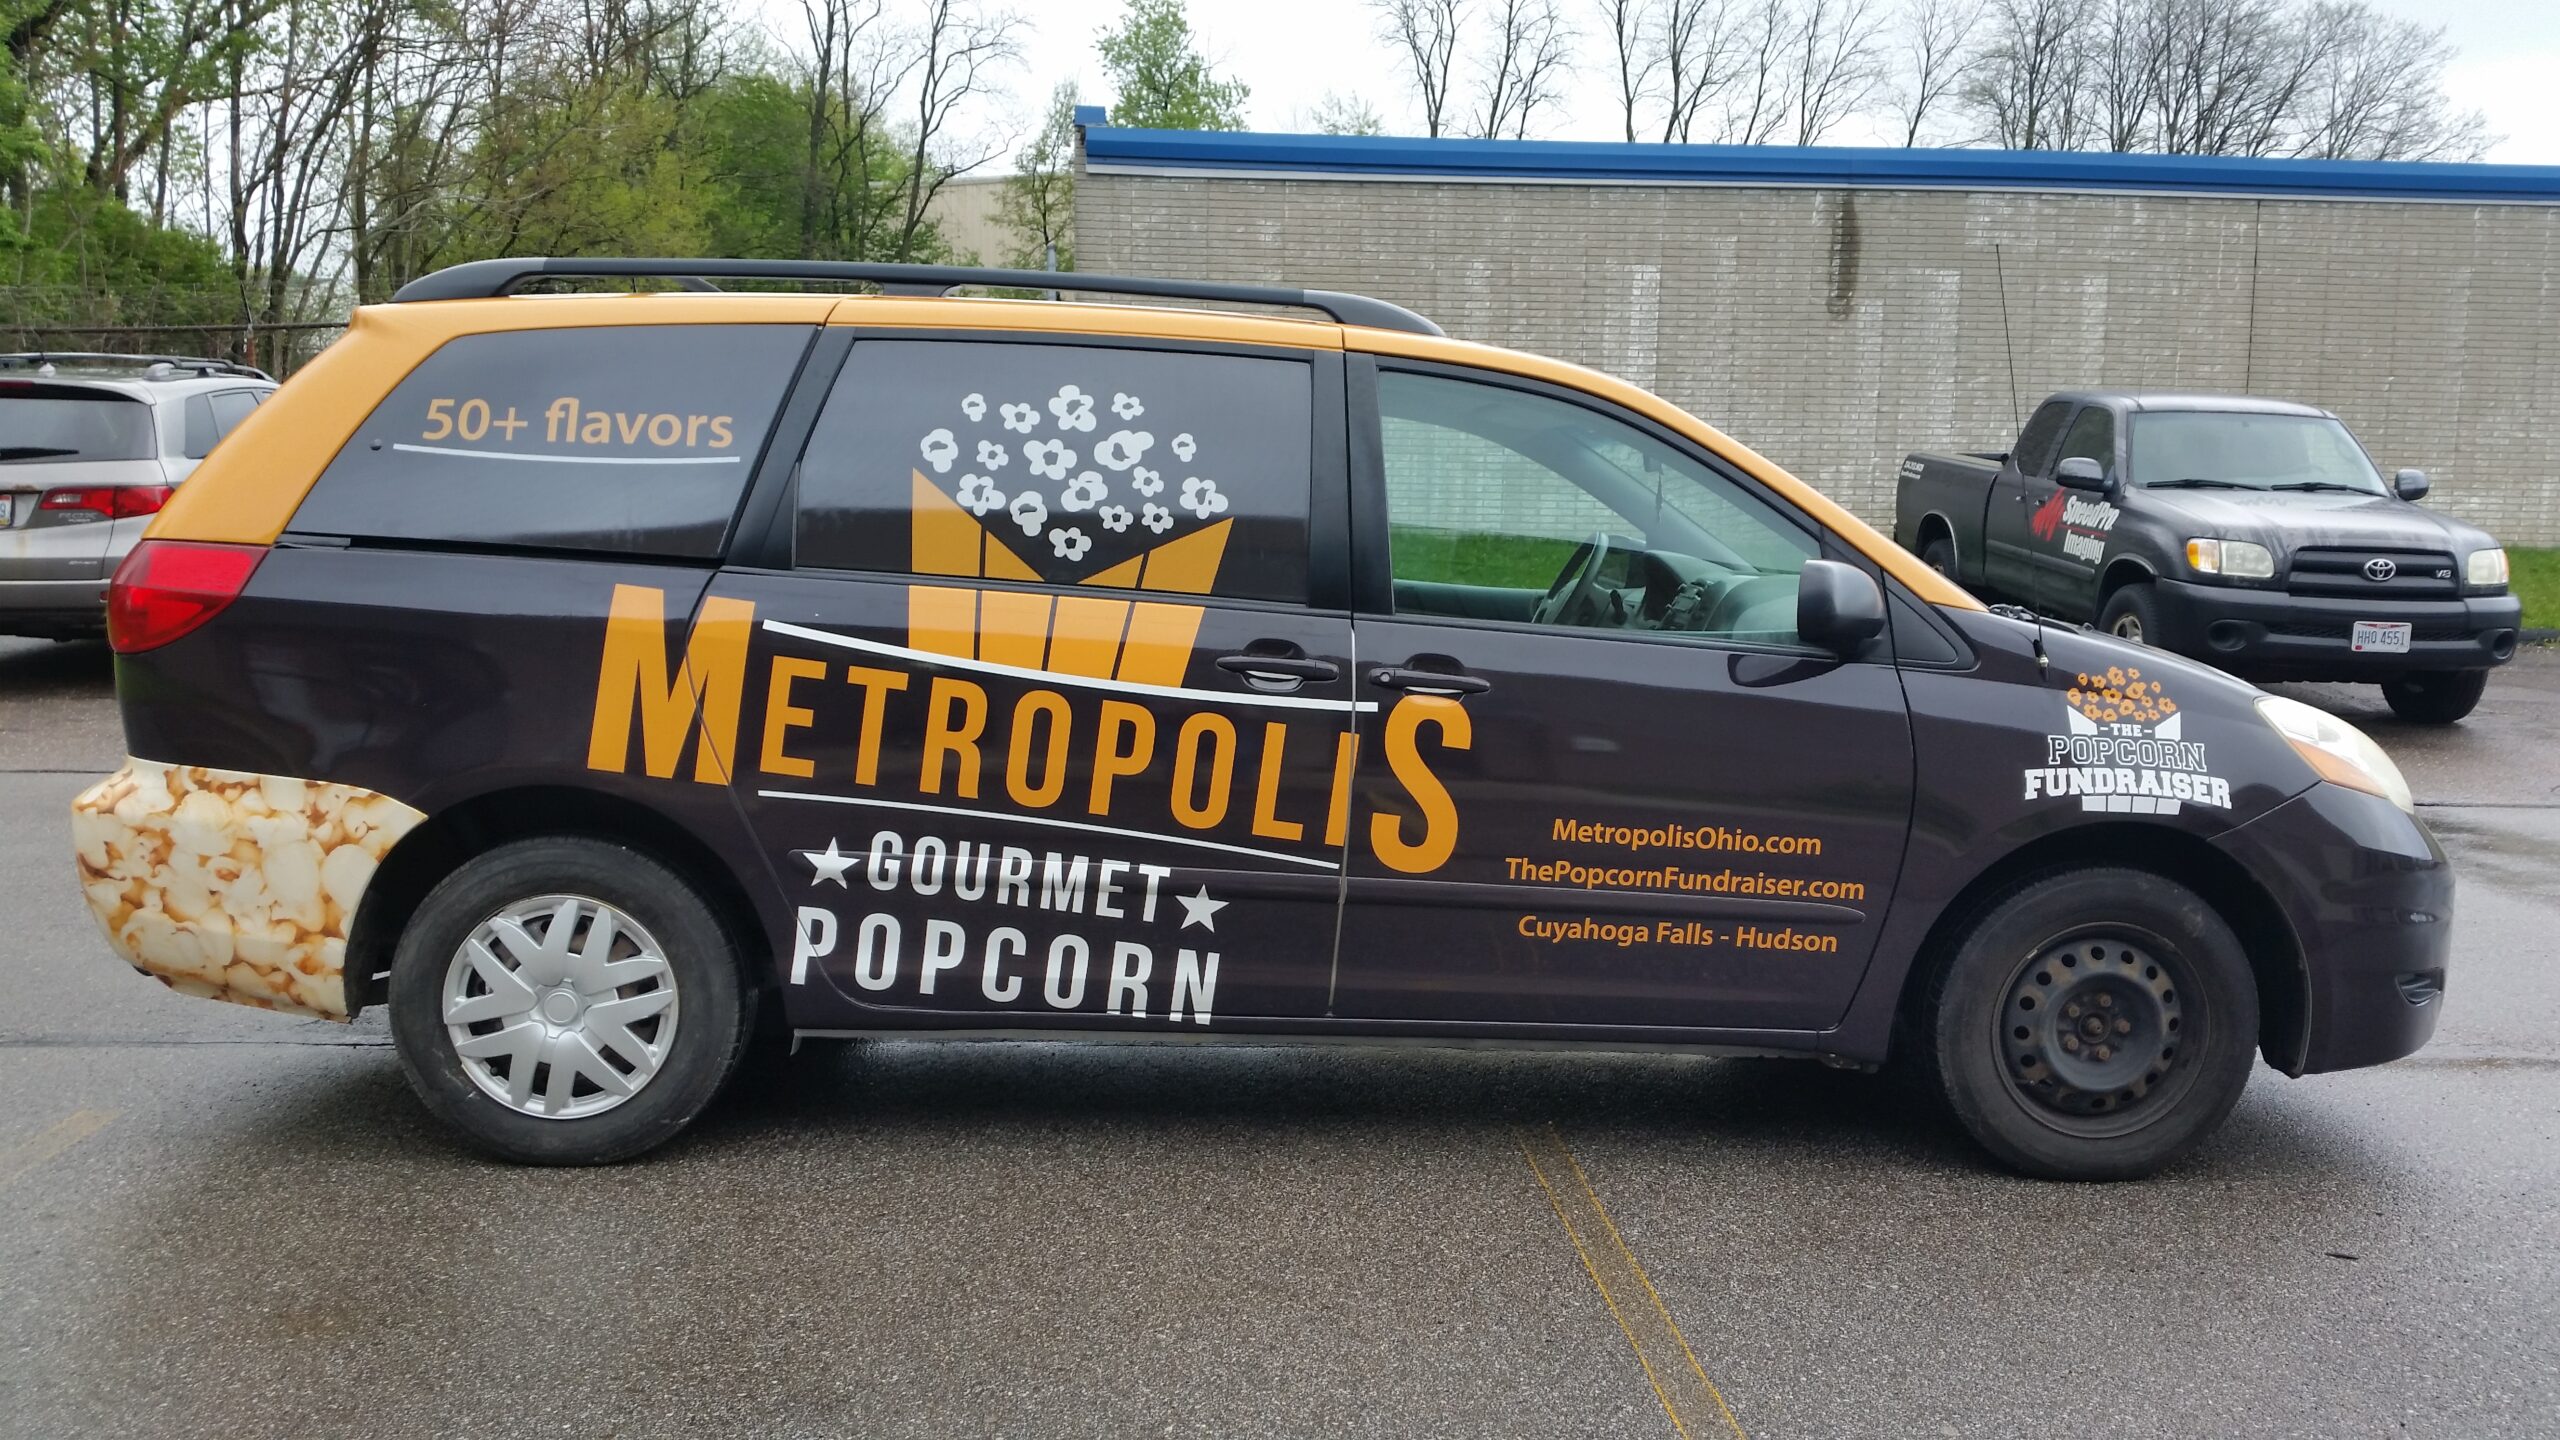 Metropolis Gourmet Popcorn Vinyl Vehicle Wrap on Van Akron